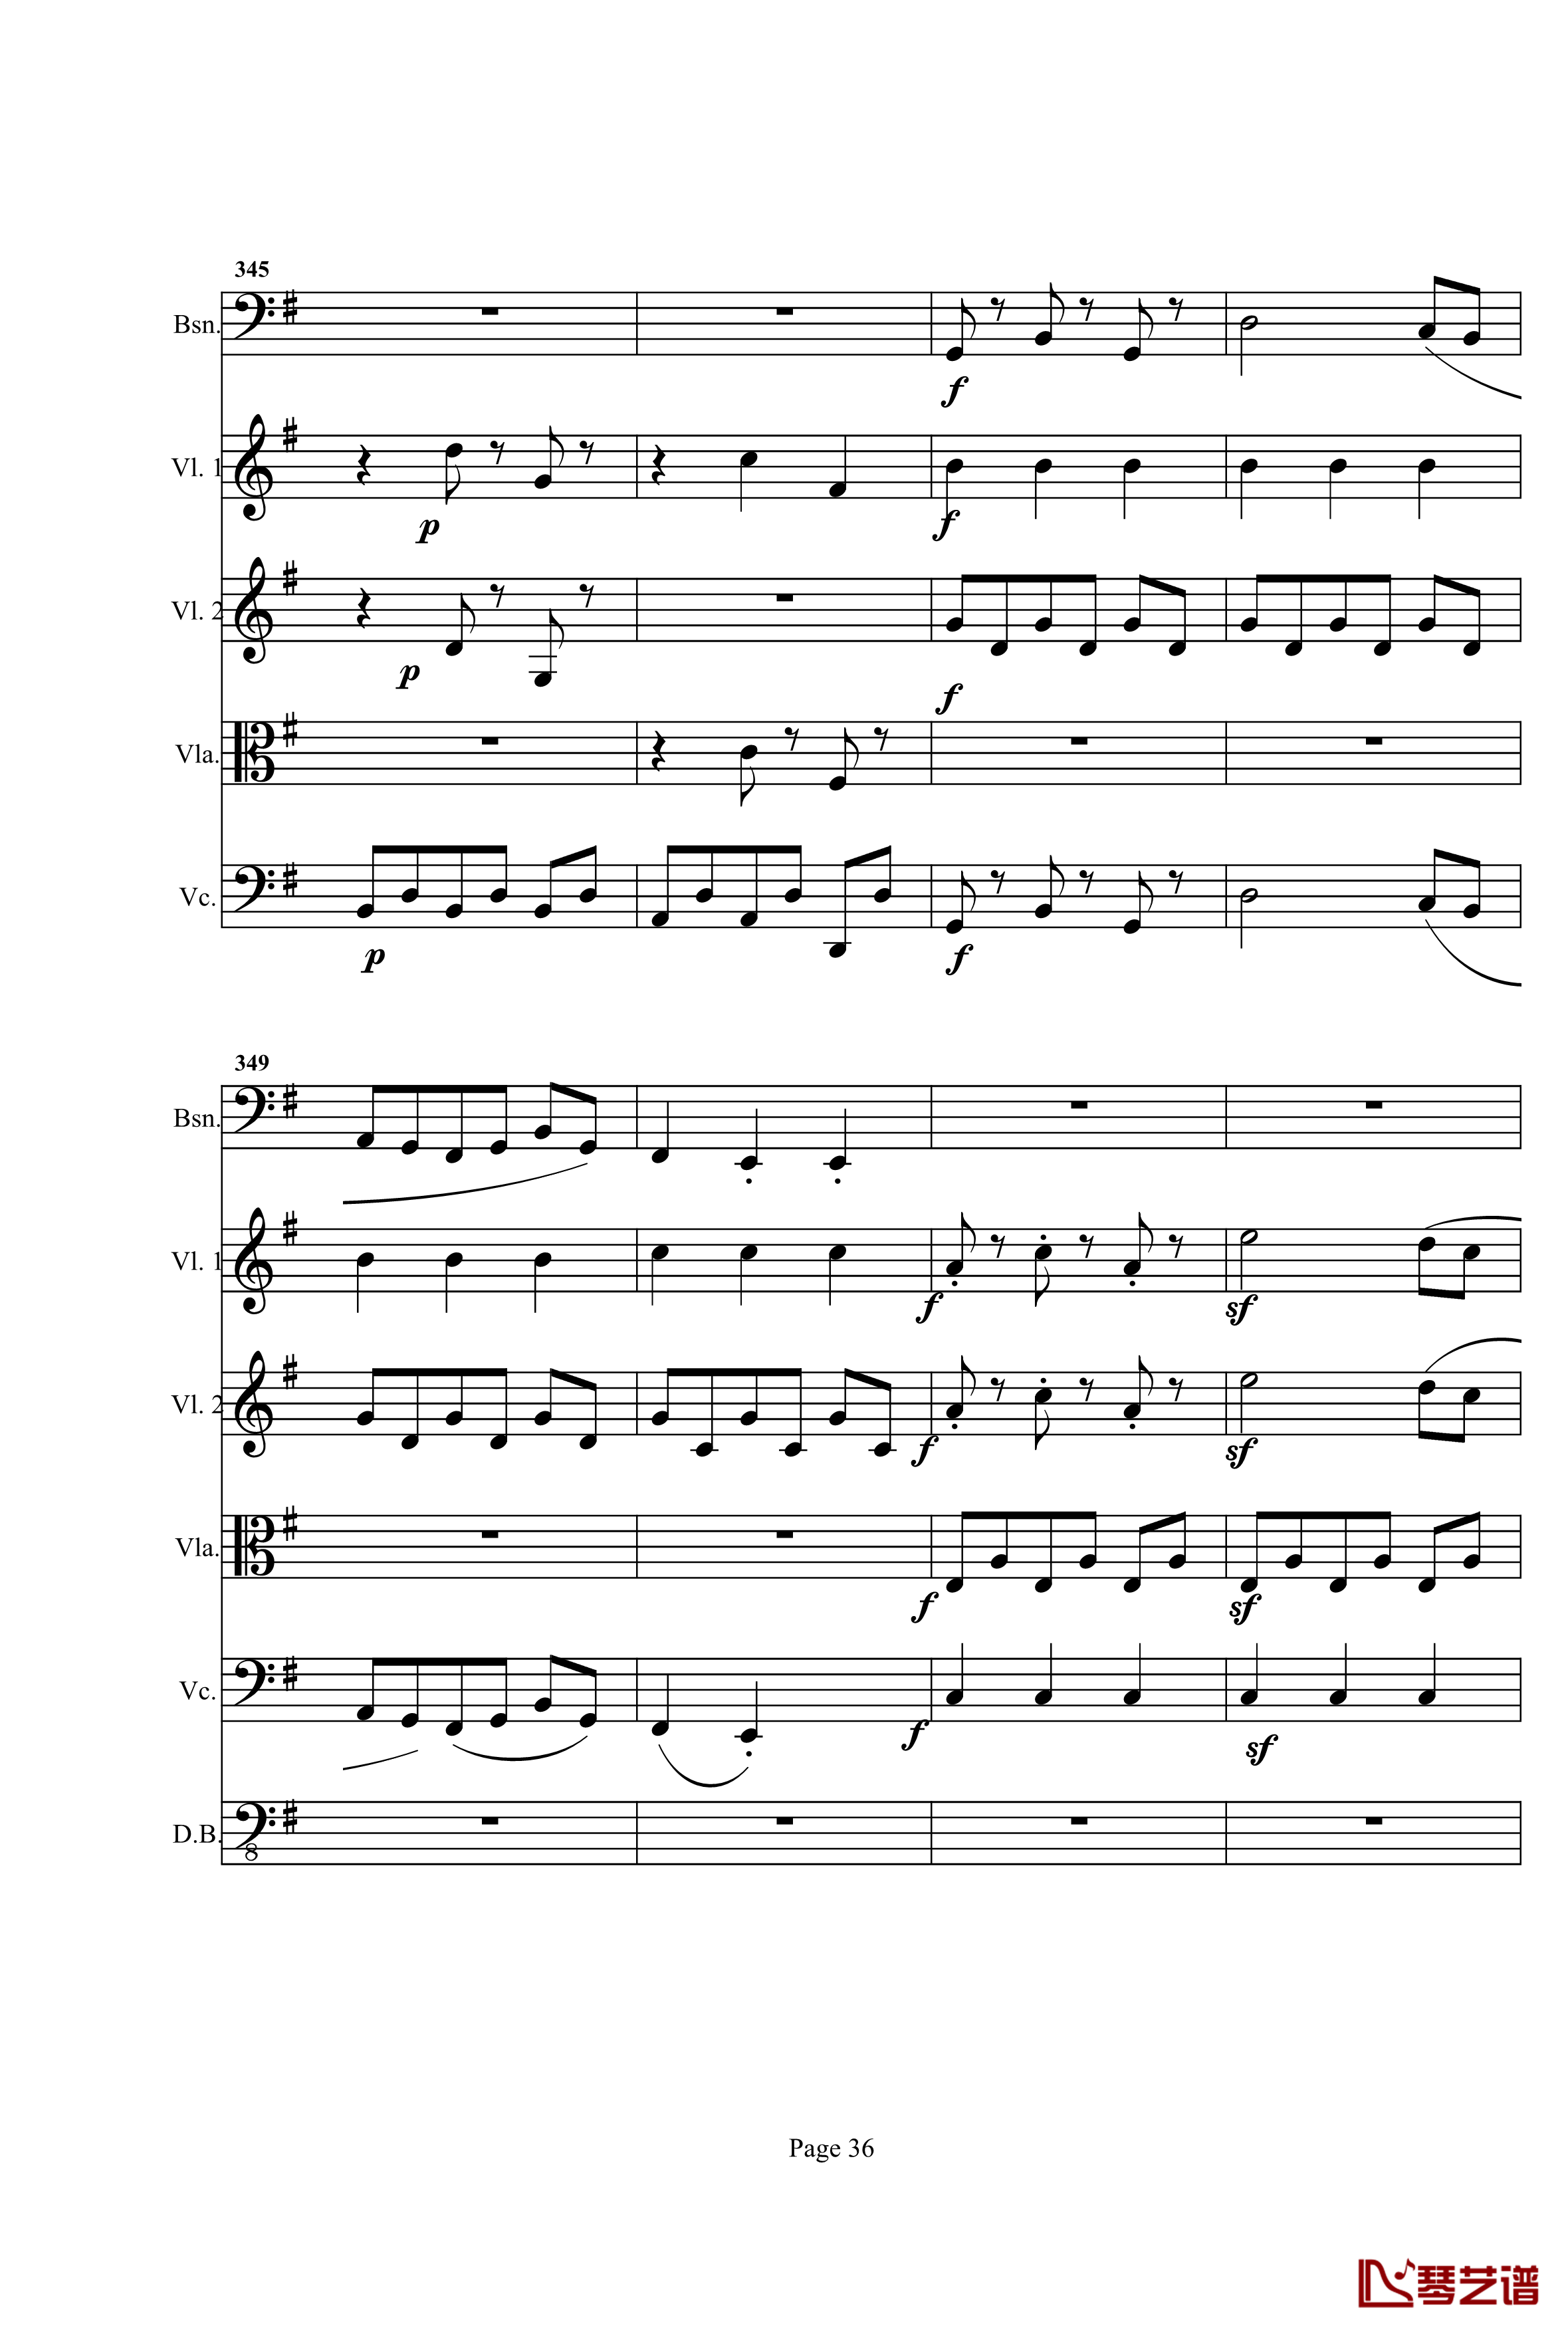 奏鸣曲之交响钢琴谱-第25首-Ⅰ-贝多芬-beethoven36